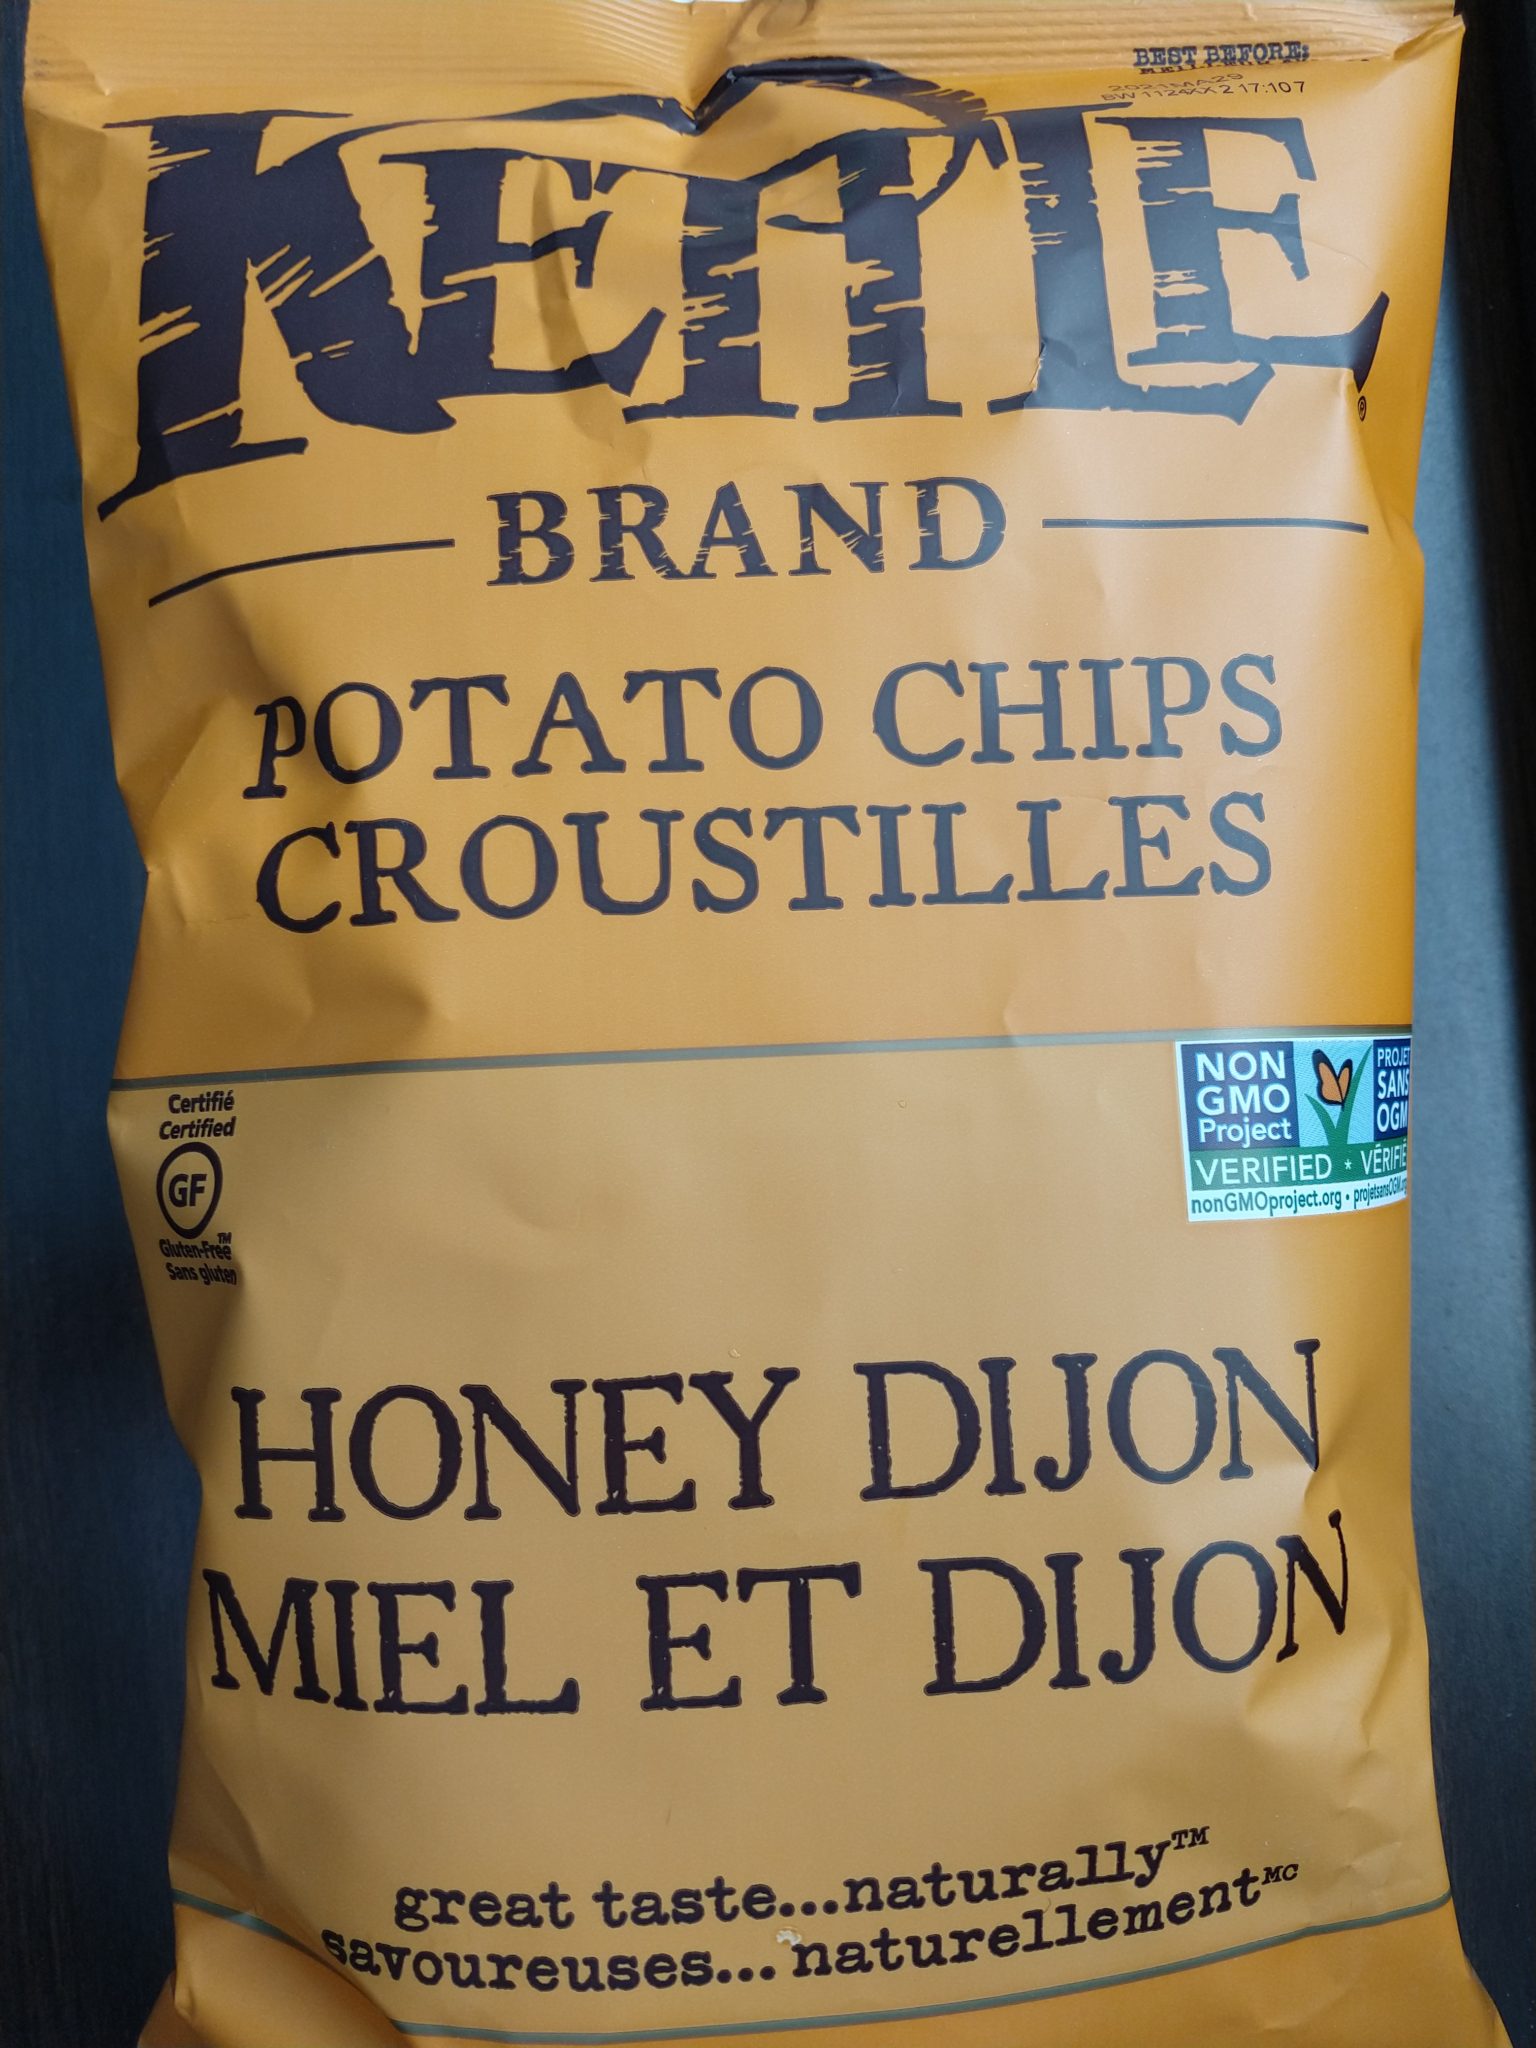 Kettle Brand – Honey Dijon